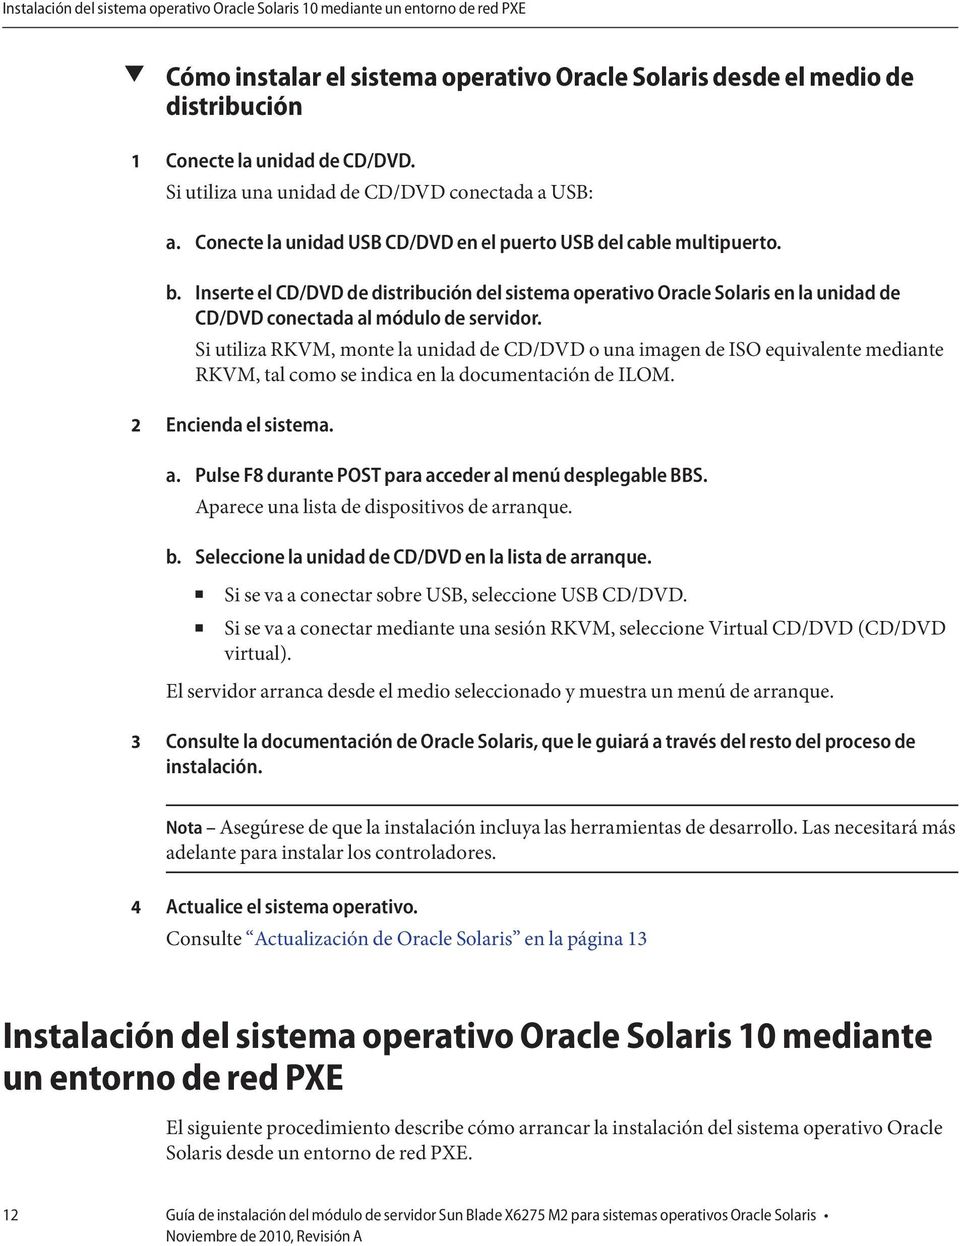 Inserte el CD/DVD de distribución del sistema operativo Oracle Solaris en la unidad de CD/DVD conectada al módulo de servidor.